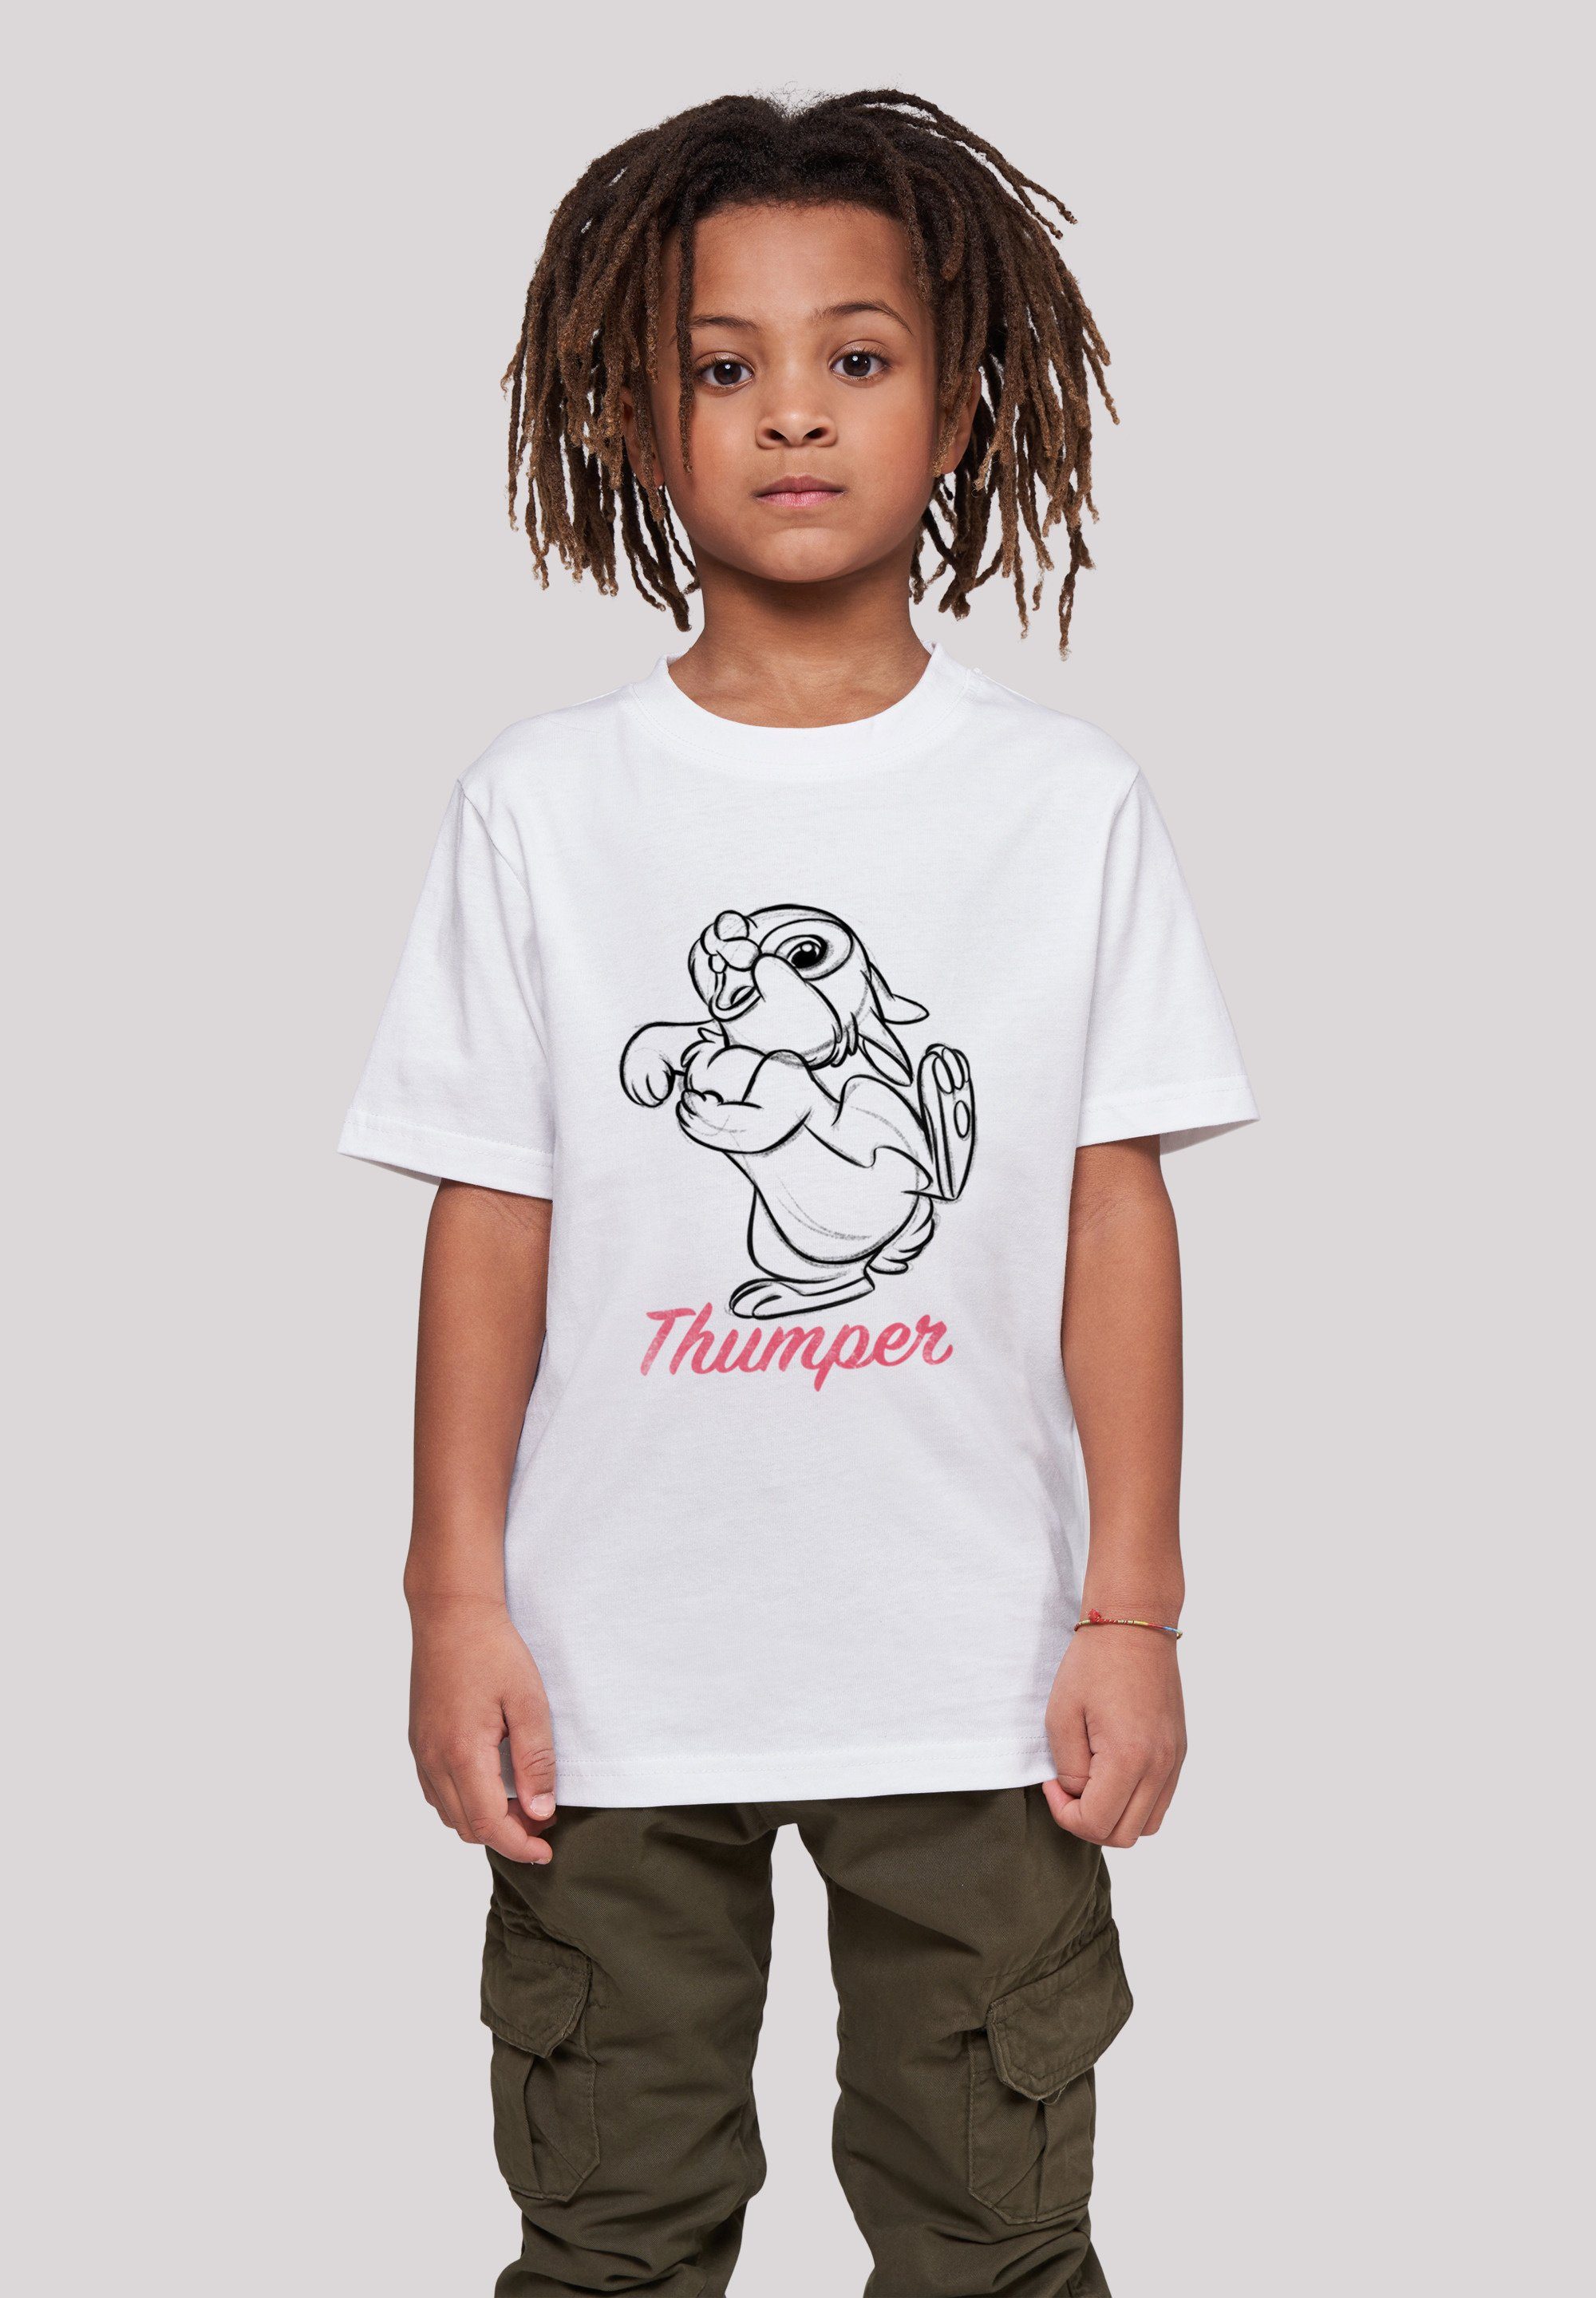 F4NT4STIC T-Shirt Disney Bambi Klopfer Line Zeichnung Unisex Kinder,Premium Merch,Jungen,Mädchen,Bedruckt